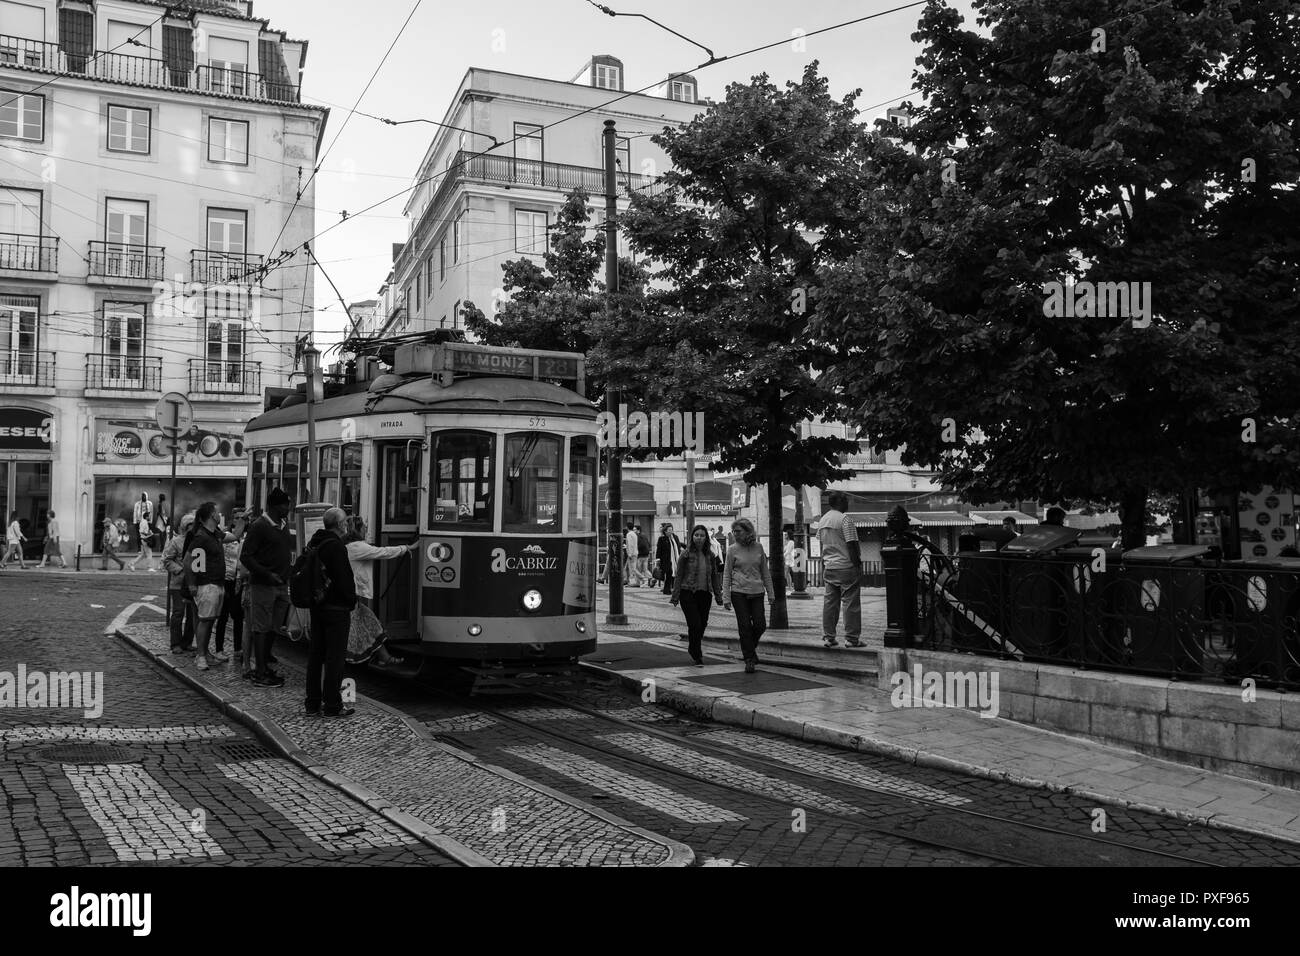 Leute, die auf einem Trolley, Straßenbahn in Lissabon Portugal. Schwarz und Weiß Stockfoto